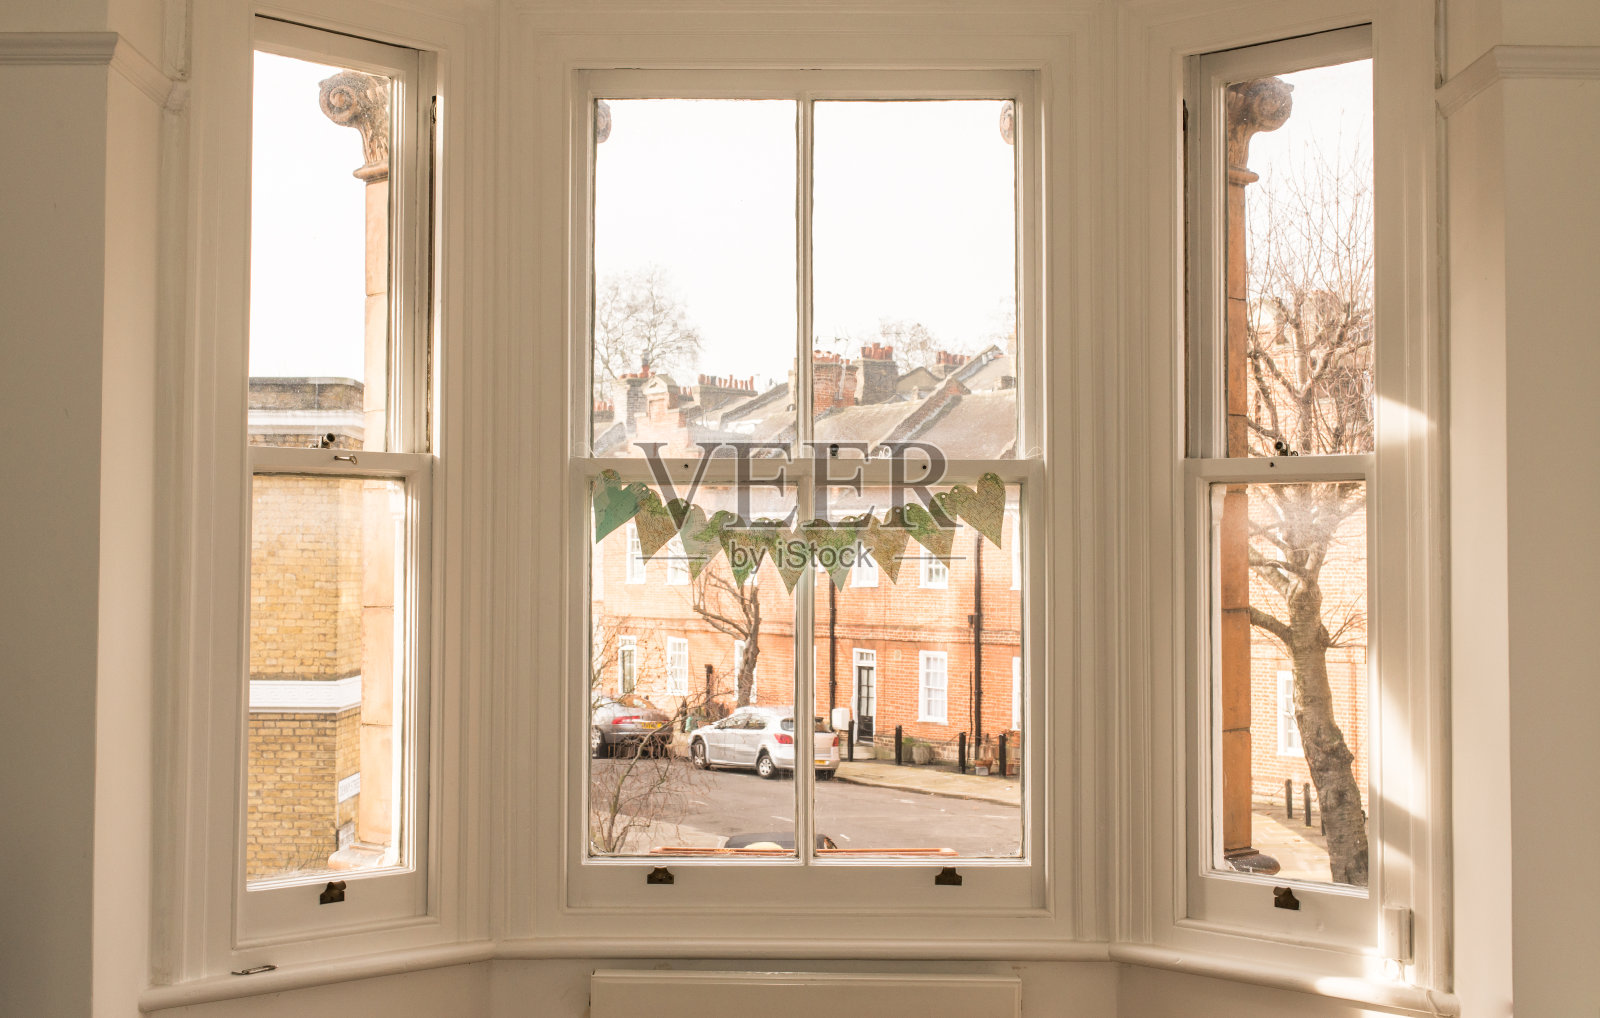 经典的维多利亚式英国房屋的窗户照片摄影图片